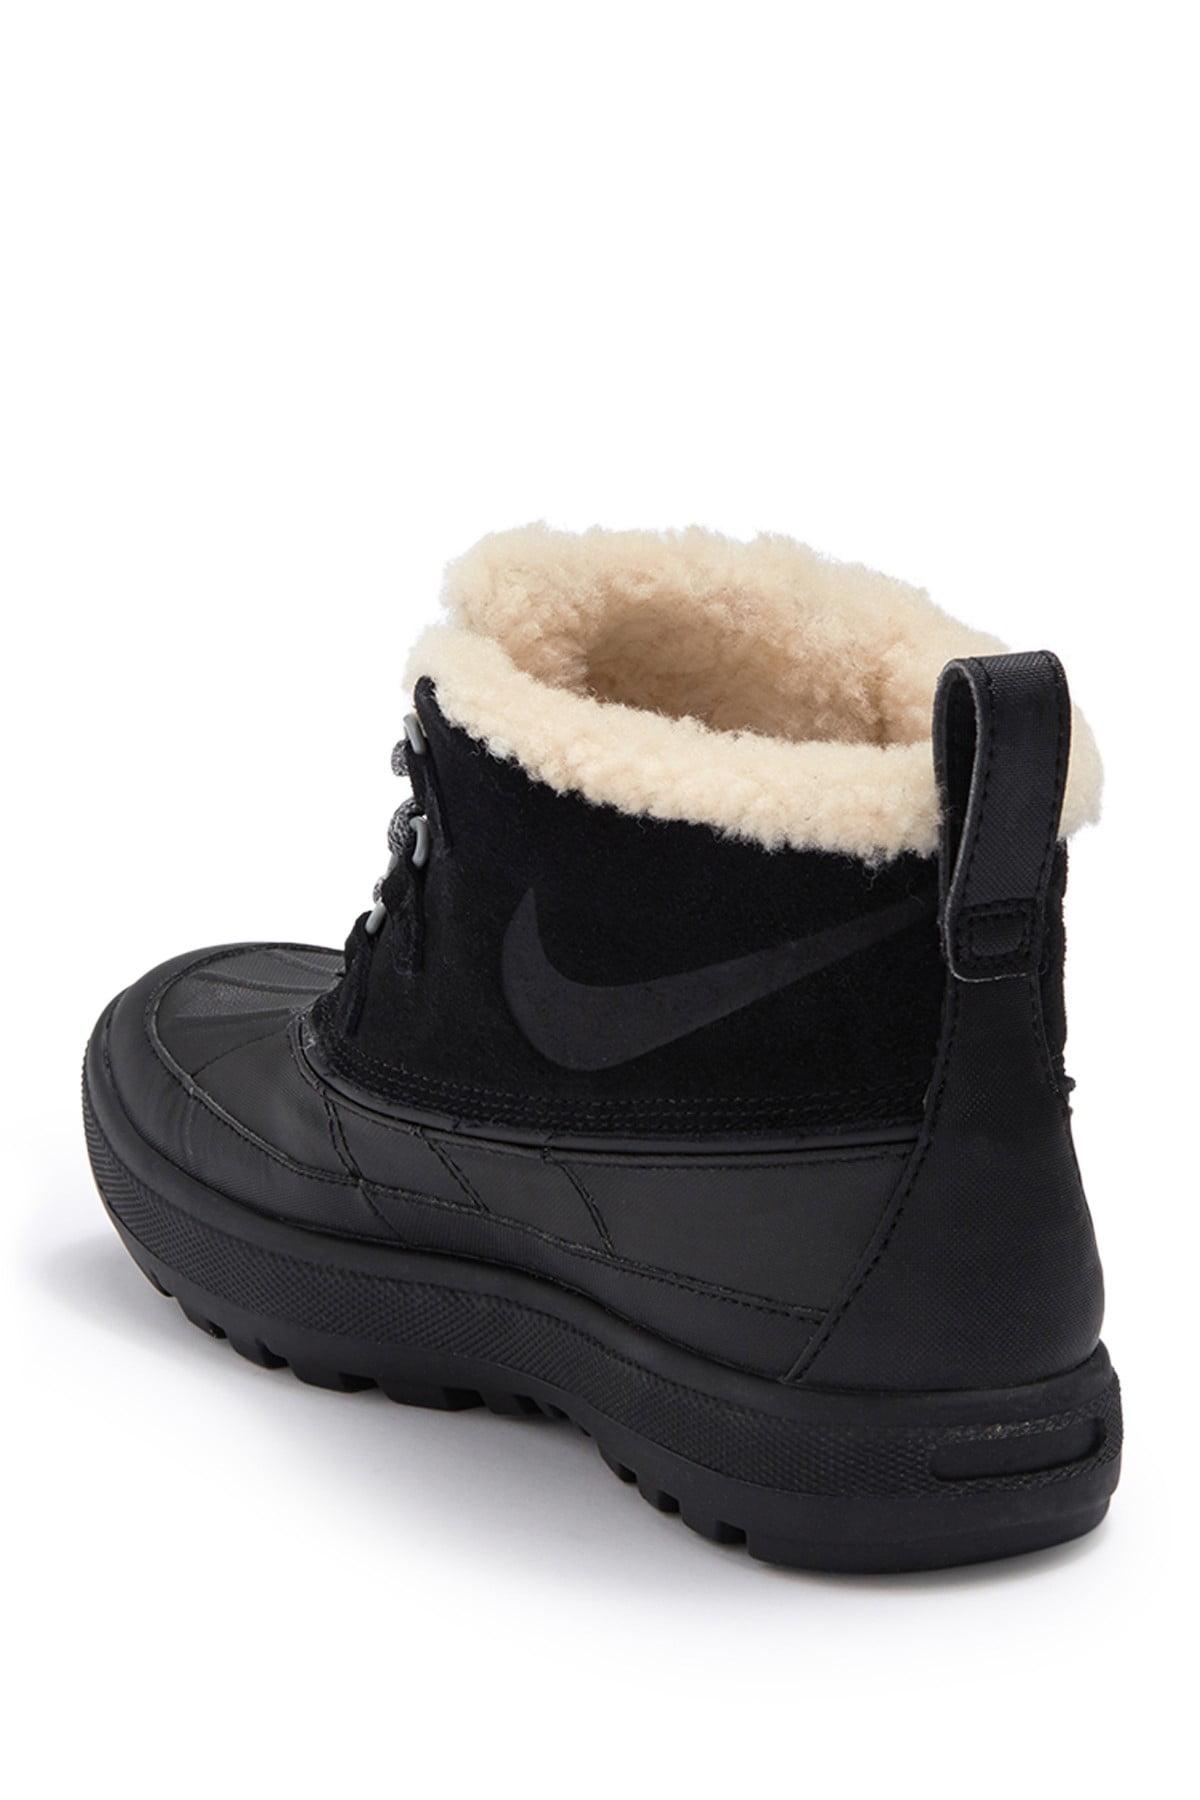 Nike Woodside Faux Fur Lined Chukka Boot in Black | Lyst